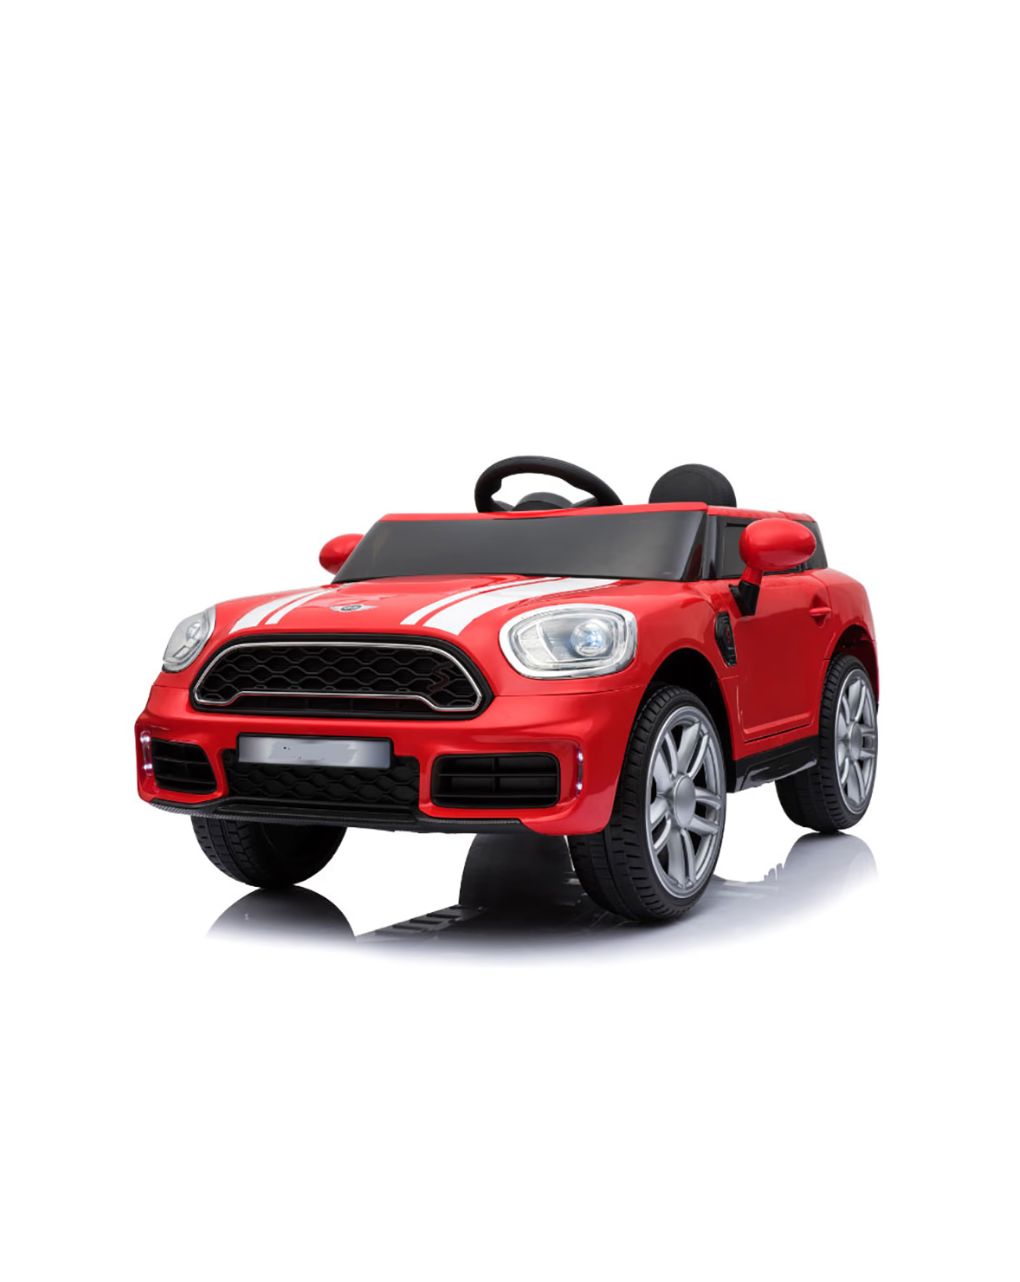 τηλεκατευθυνόμενο αυτοκίνητο τύπου mini cooper κόκκινο 12v